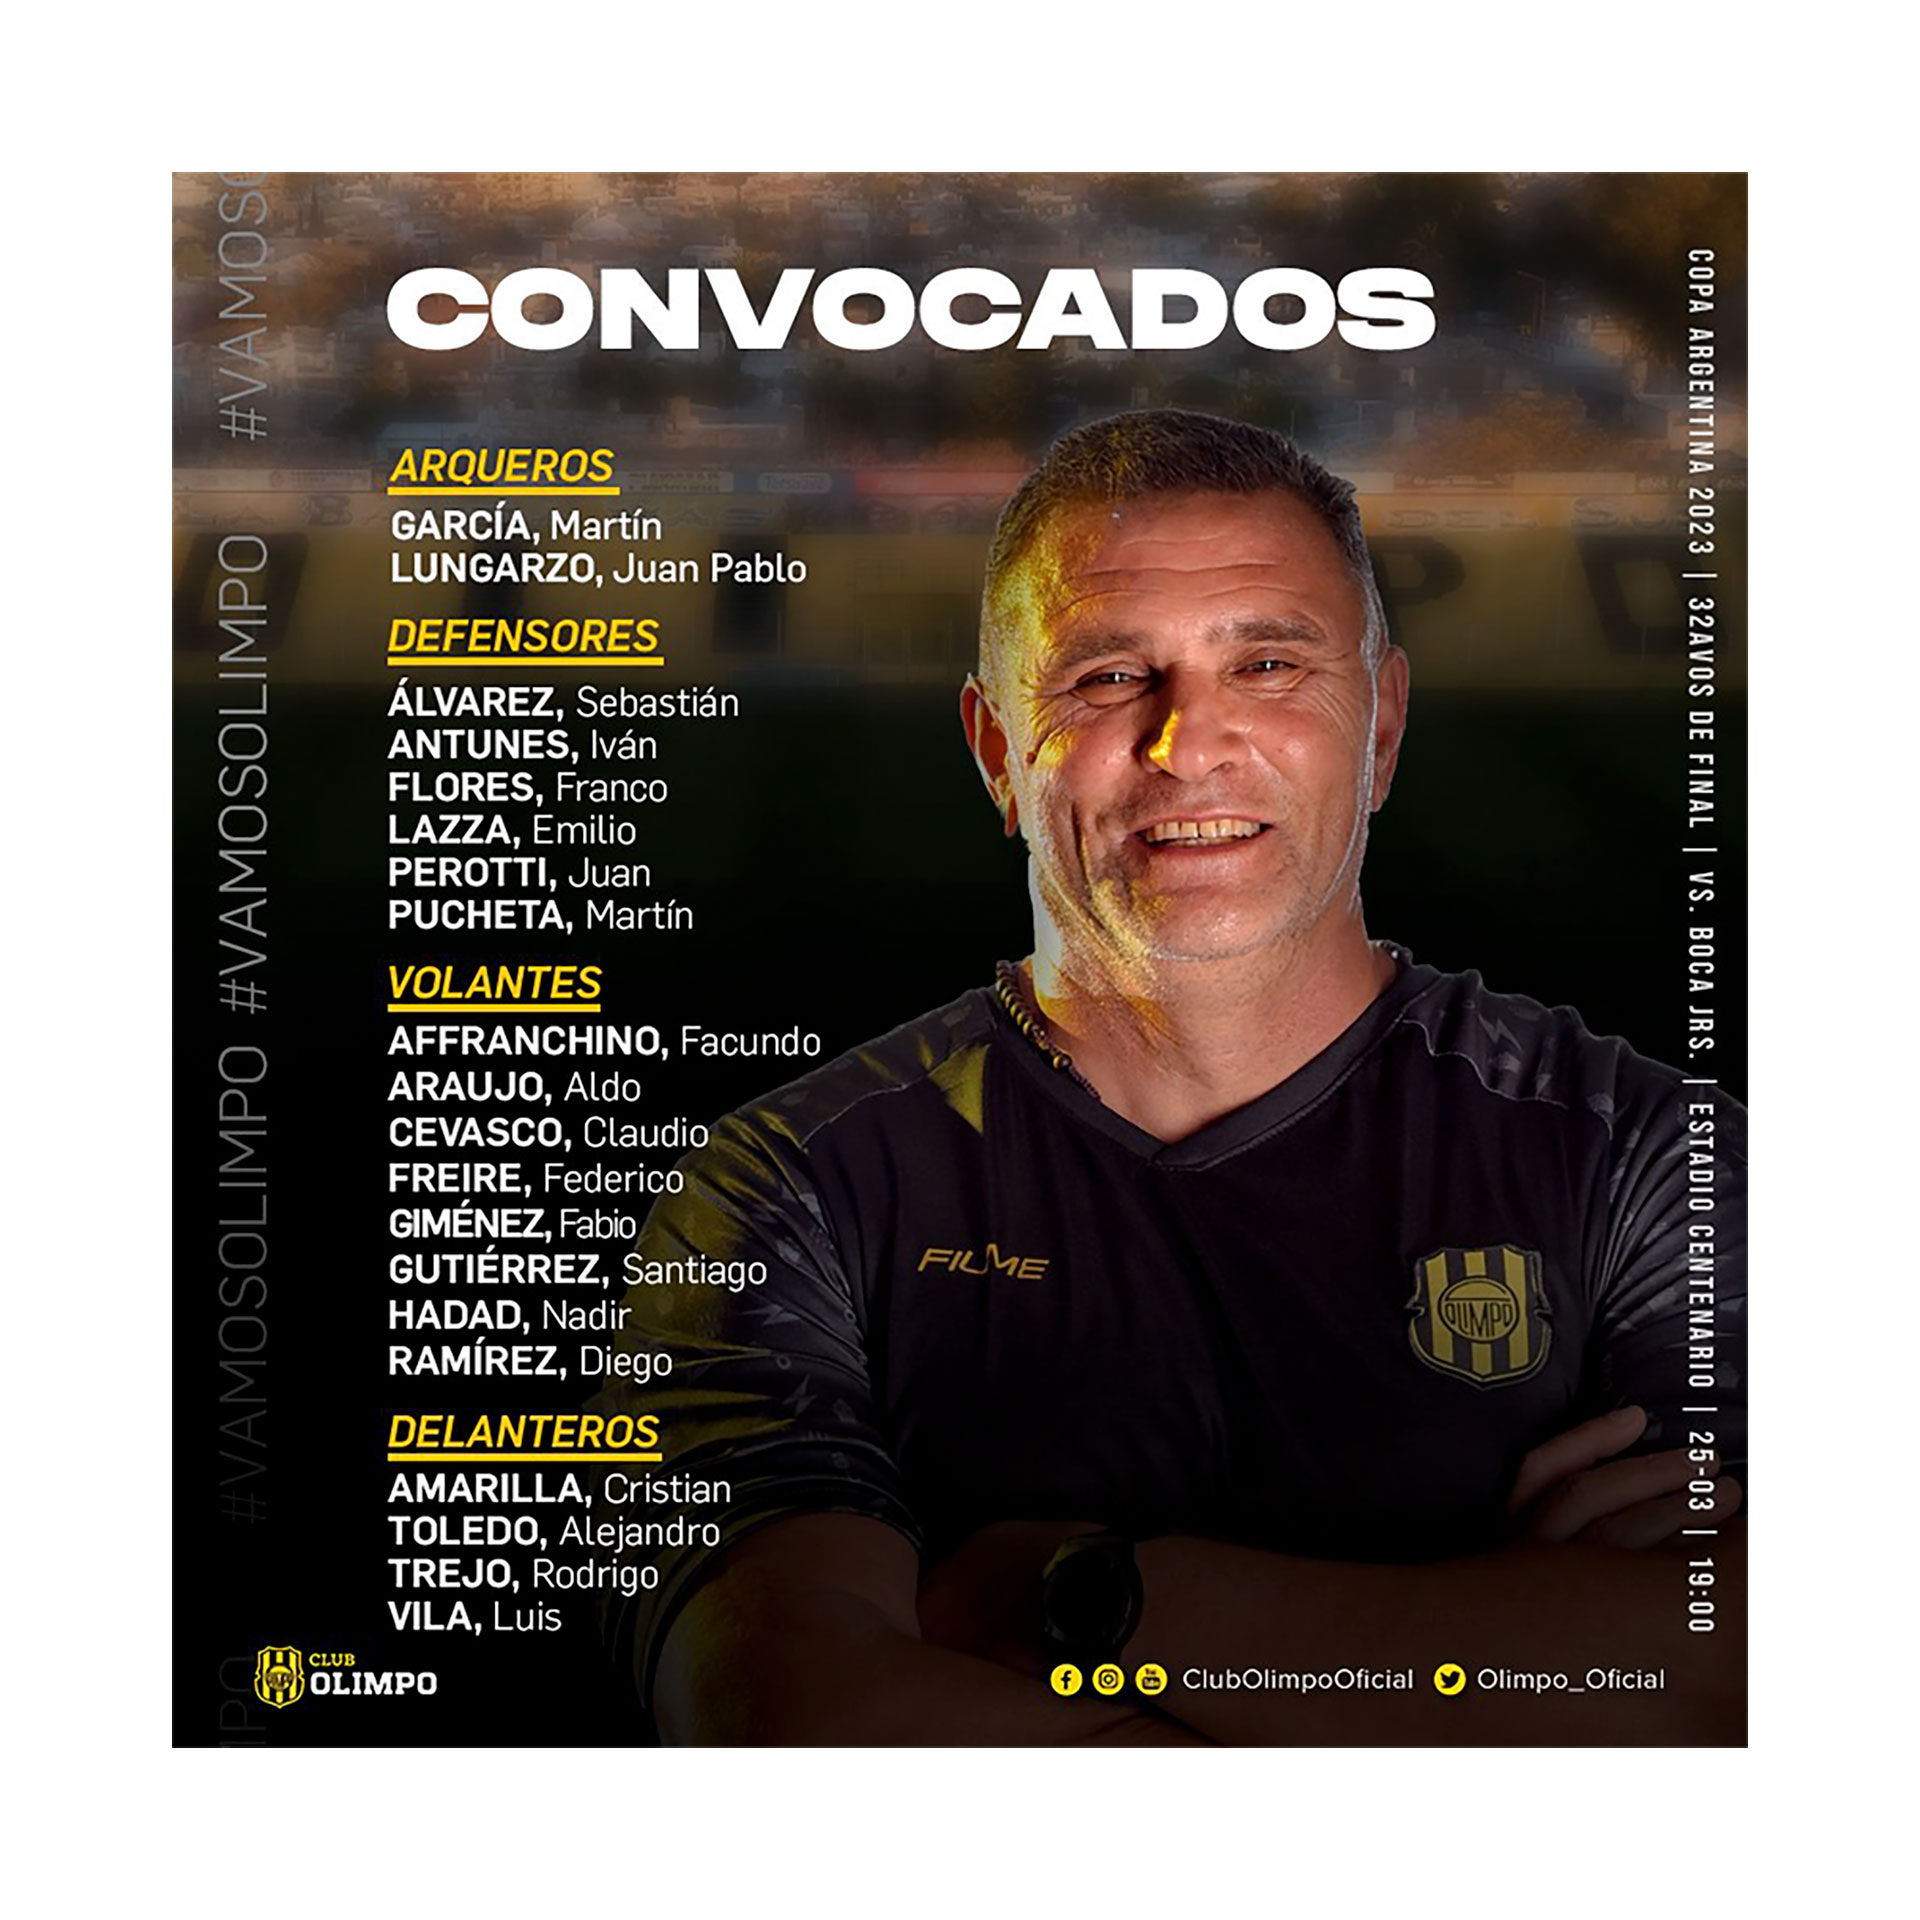 Los convocados de Arnaldo Sialle para enfrentar a Boca Juniors